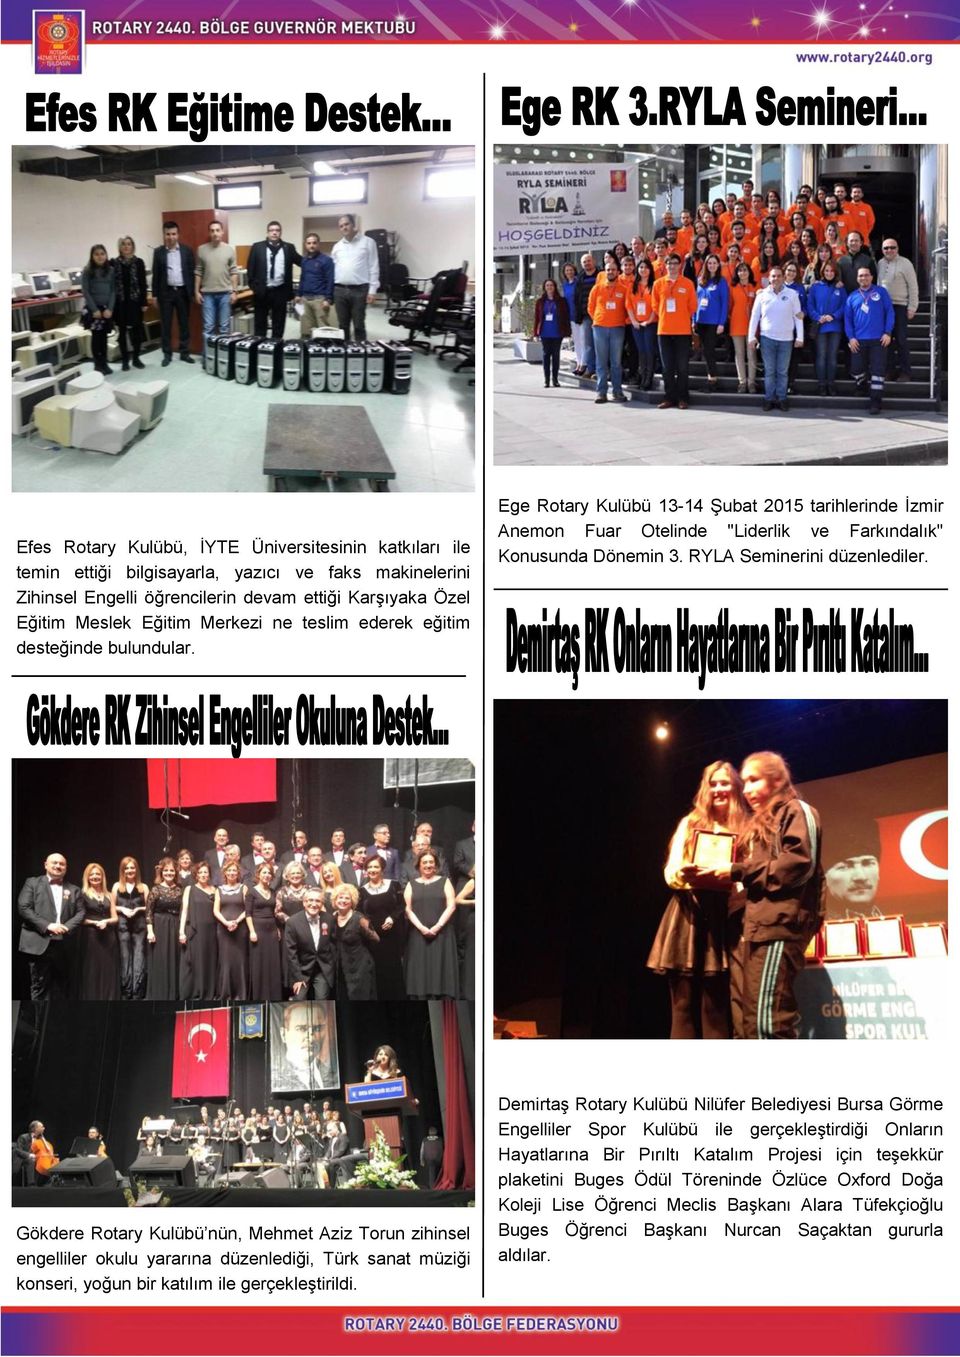 Gökdere Rotary Kulübü nün, Mehmet Aziz Torun zihinsel engelliler okulu yararına düzenlediği, Türk sanat müziği konseri, yoğun bir katılım ile gerçekleştirildi.